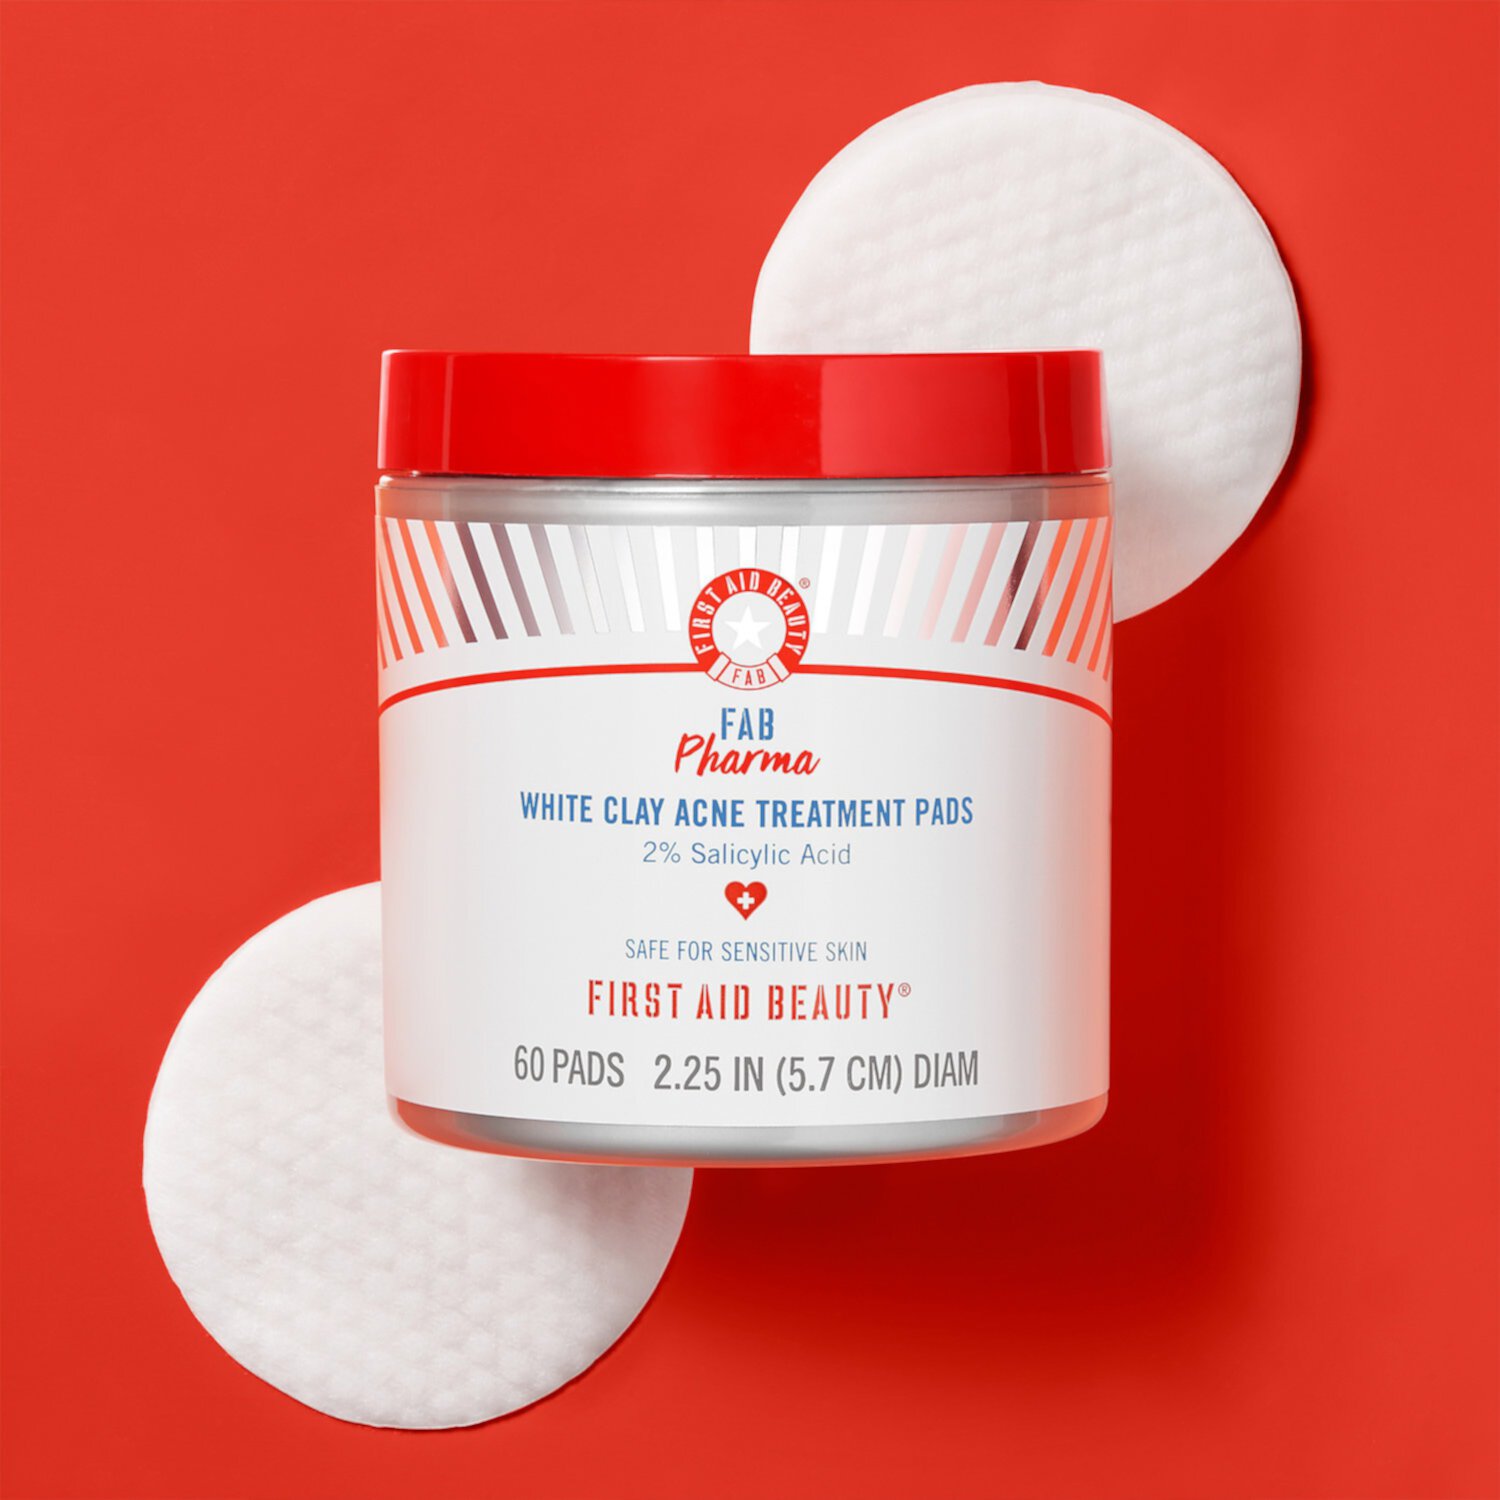 FAB Pharma Прокладки для лечения прыщей с белой глиной, 2% салициловой кислоты First Aid Beauty